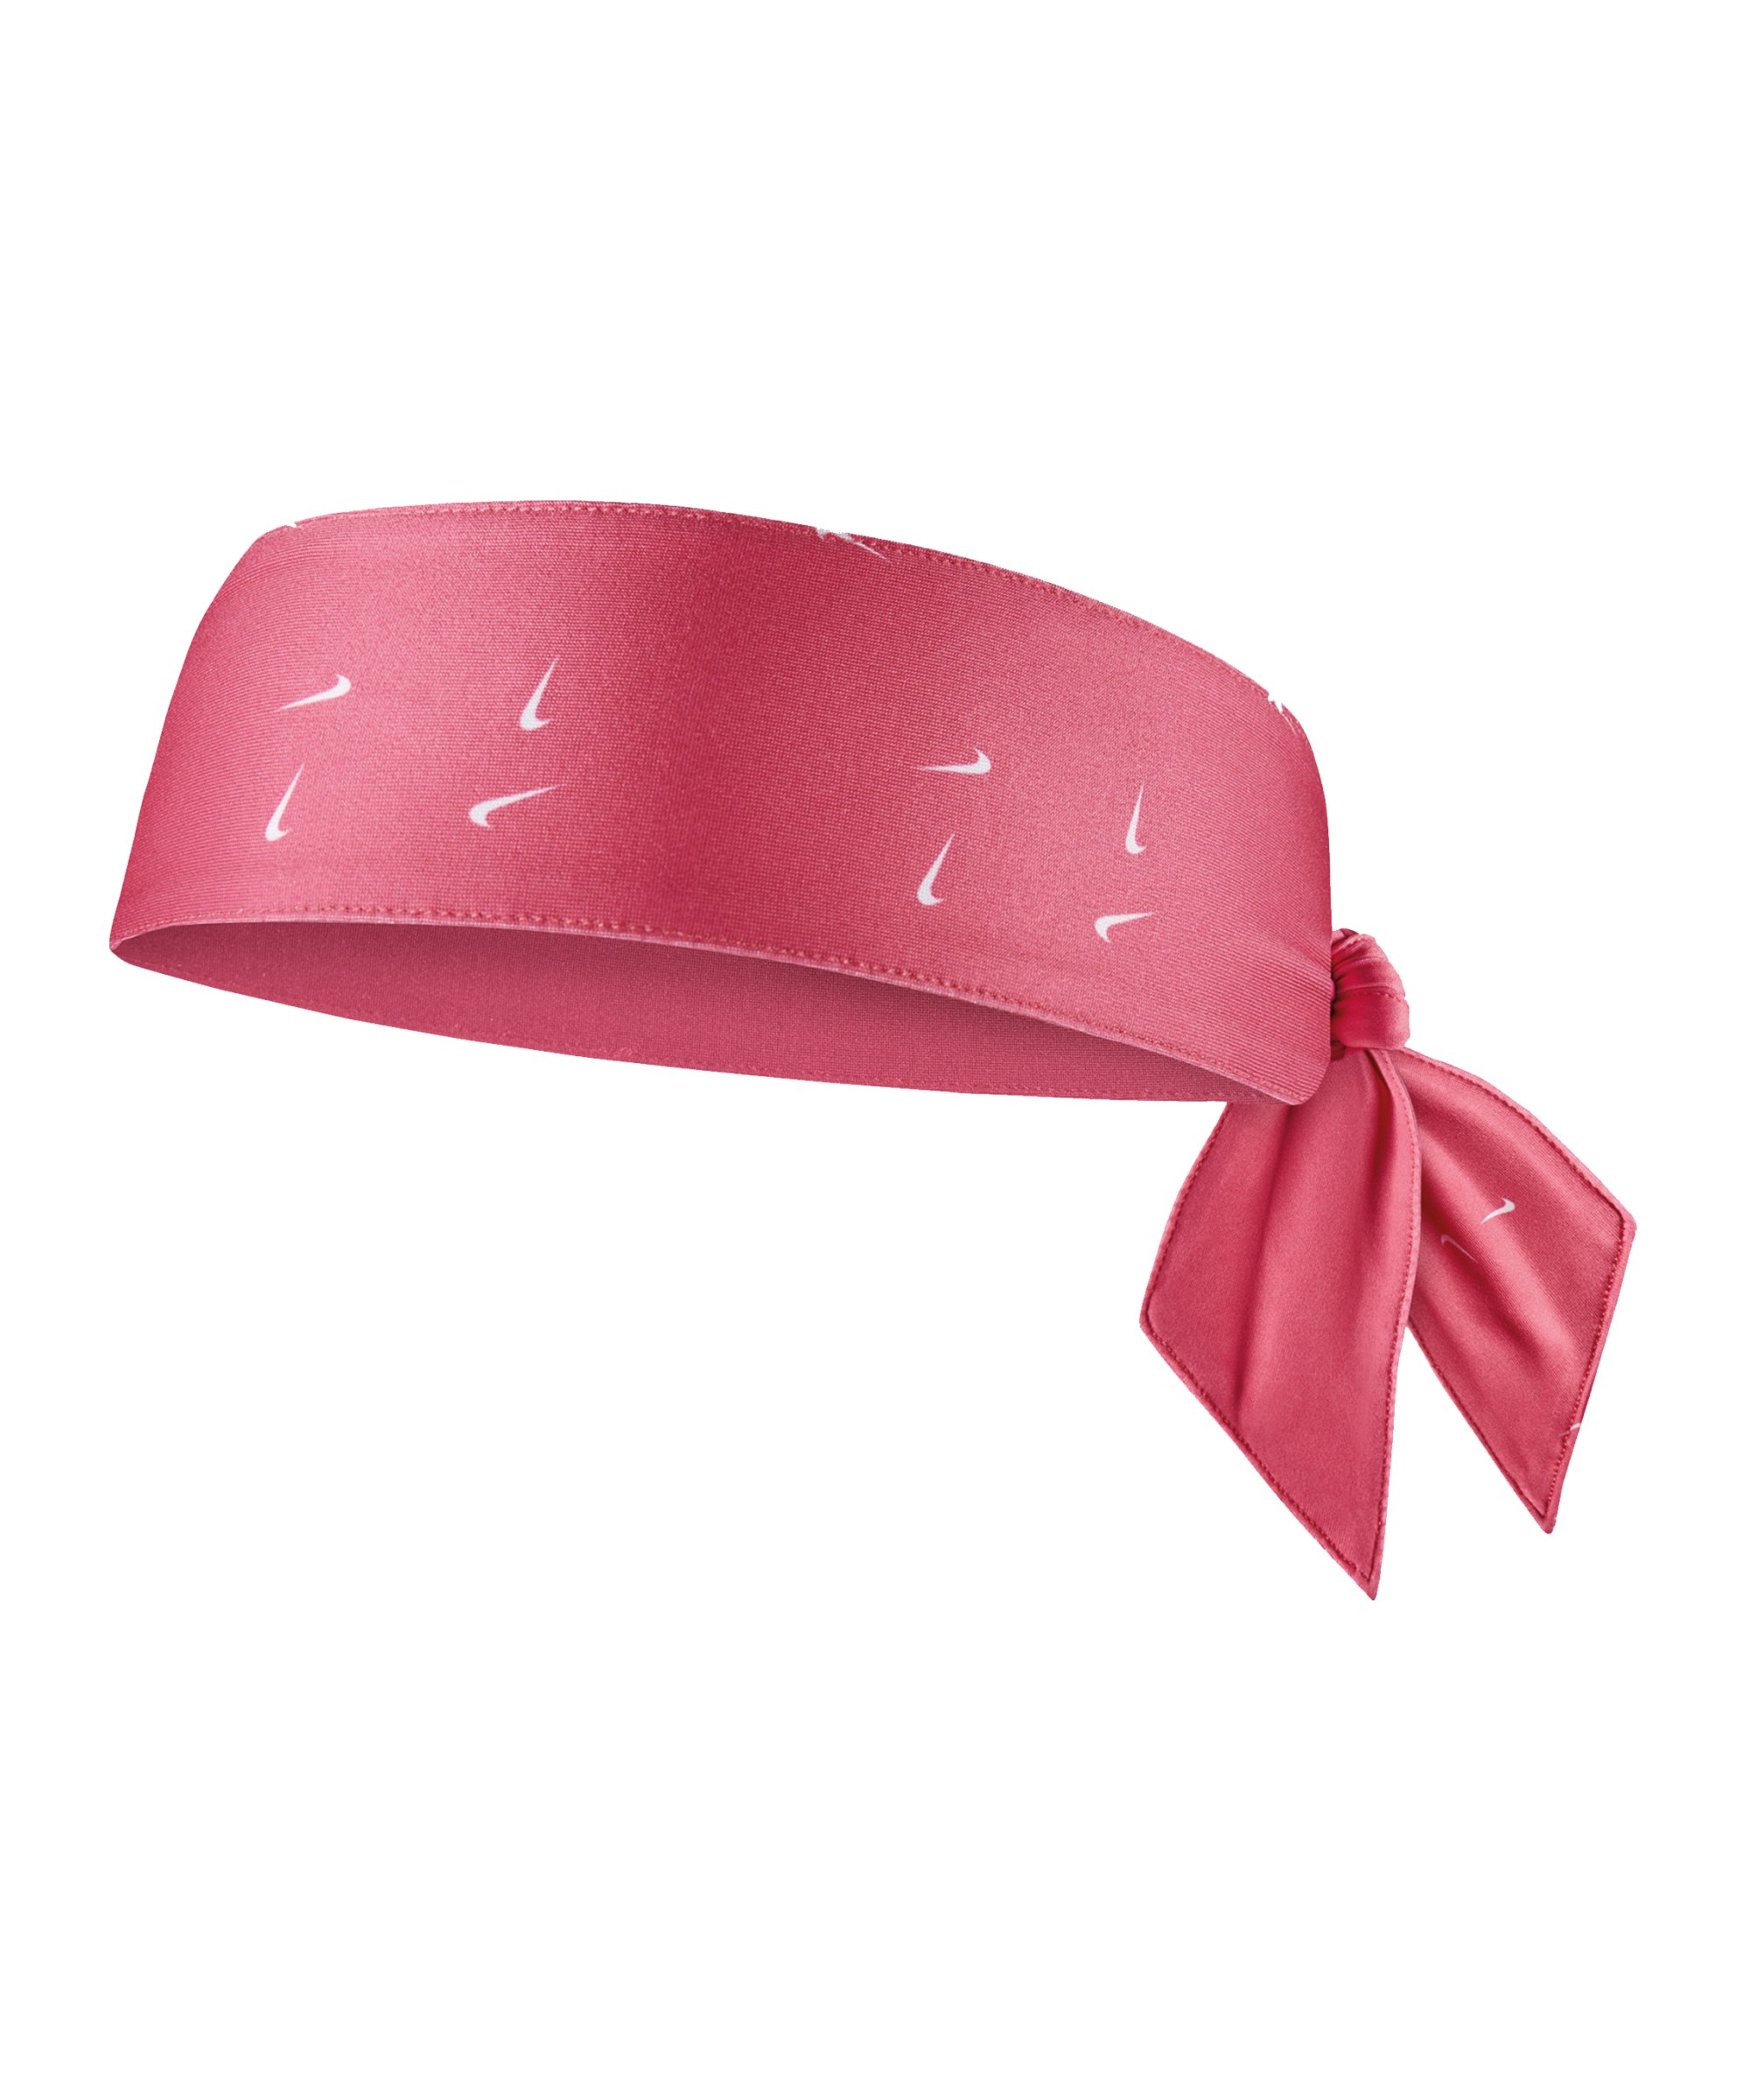 Nike Dri-FIT Head Tie 4.0 Haarband Pink F629 - pink